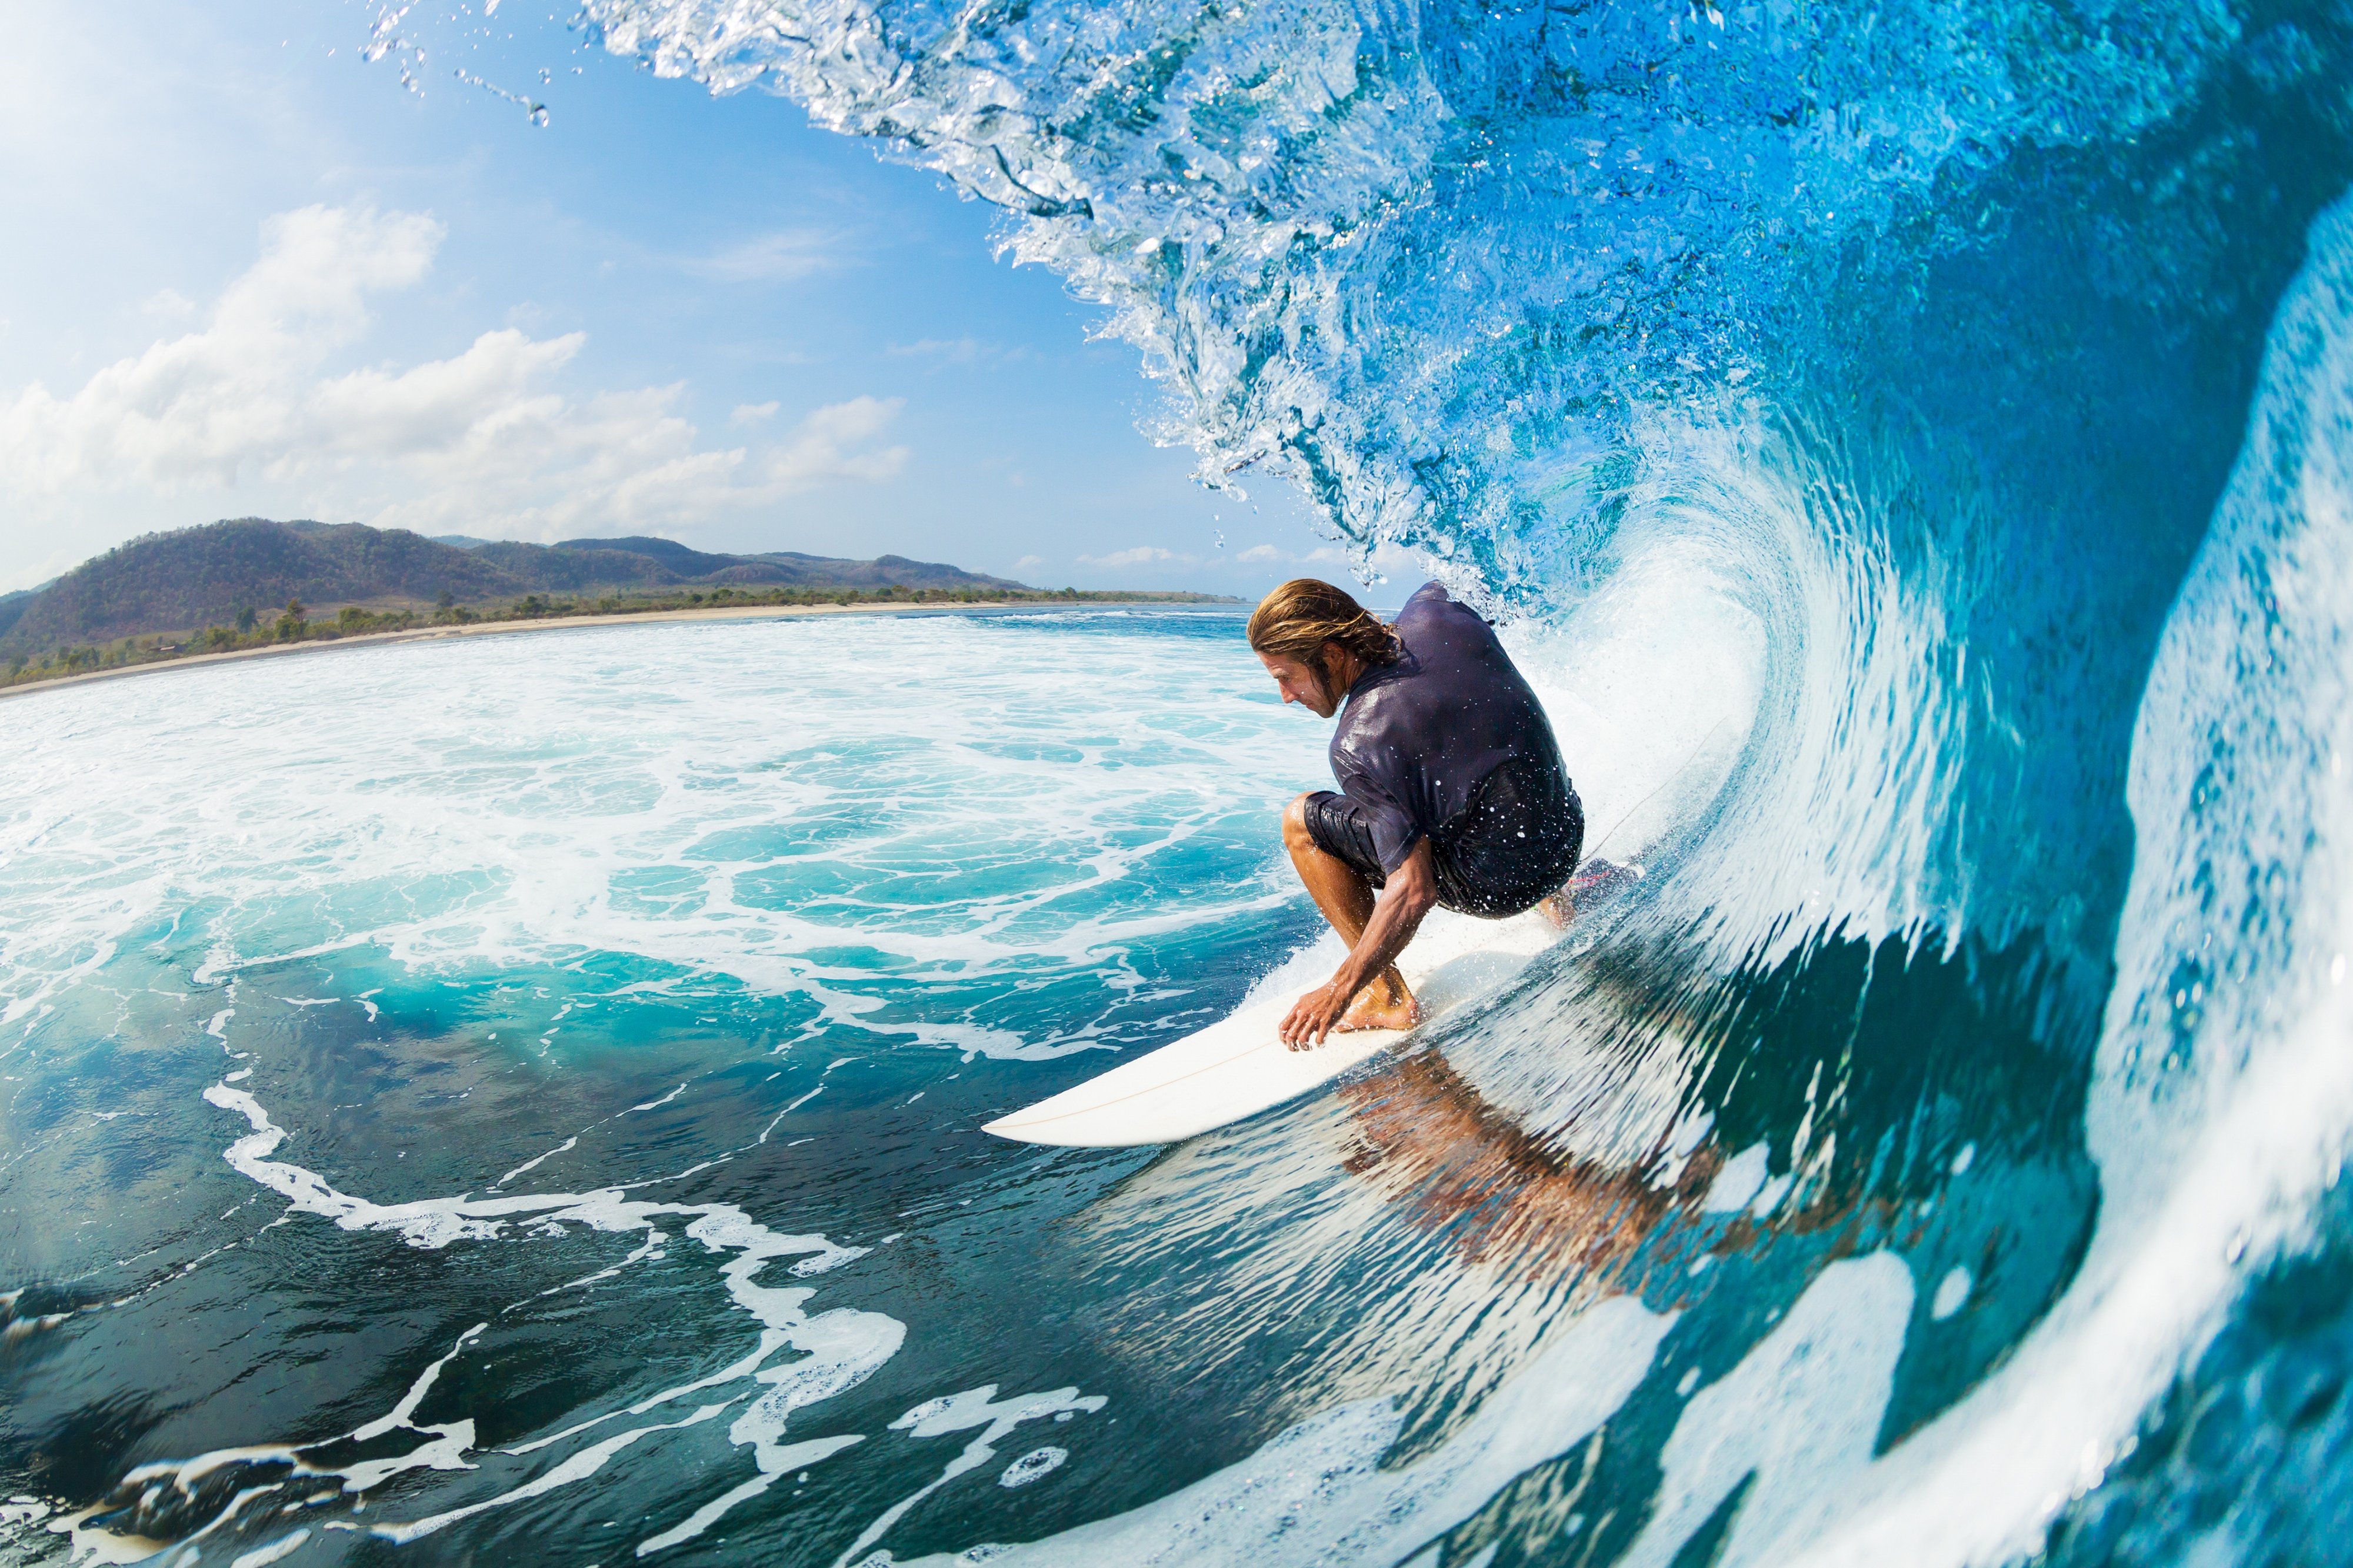 HD Surfing Surf Beach Wallpaper Widescreen Full Size